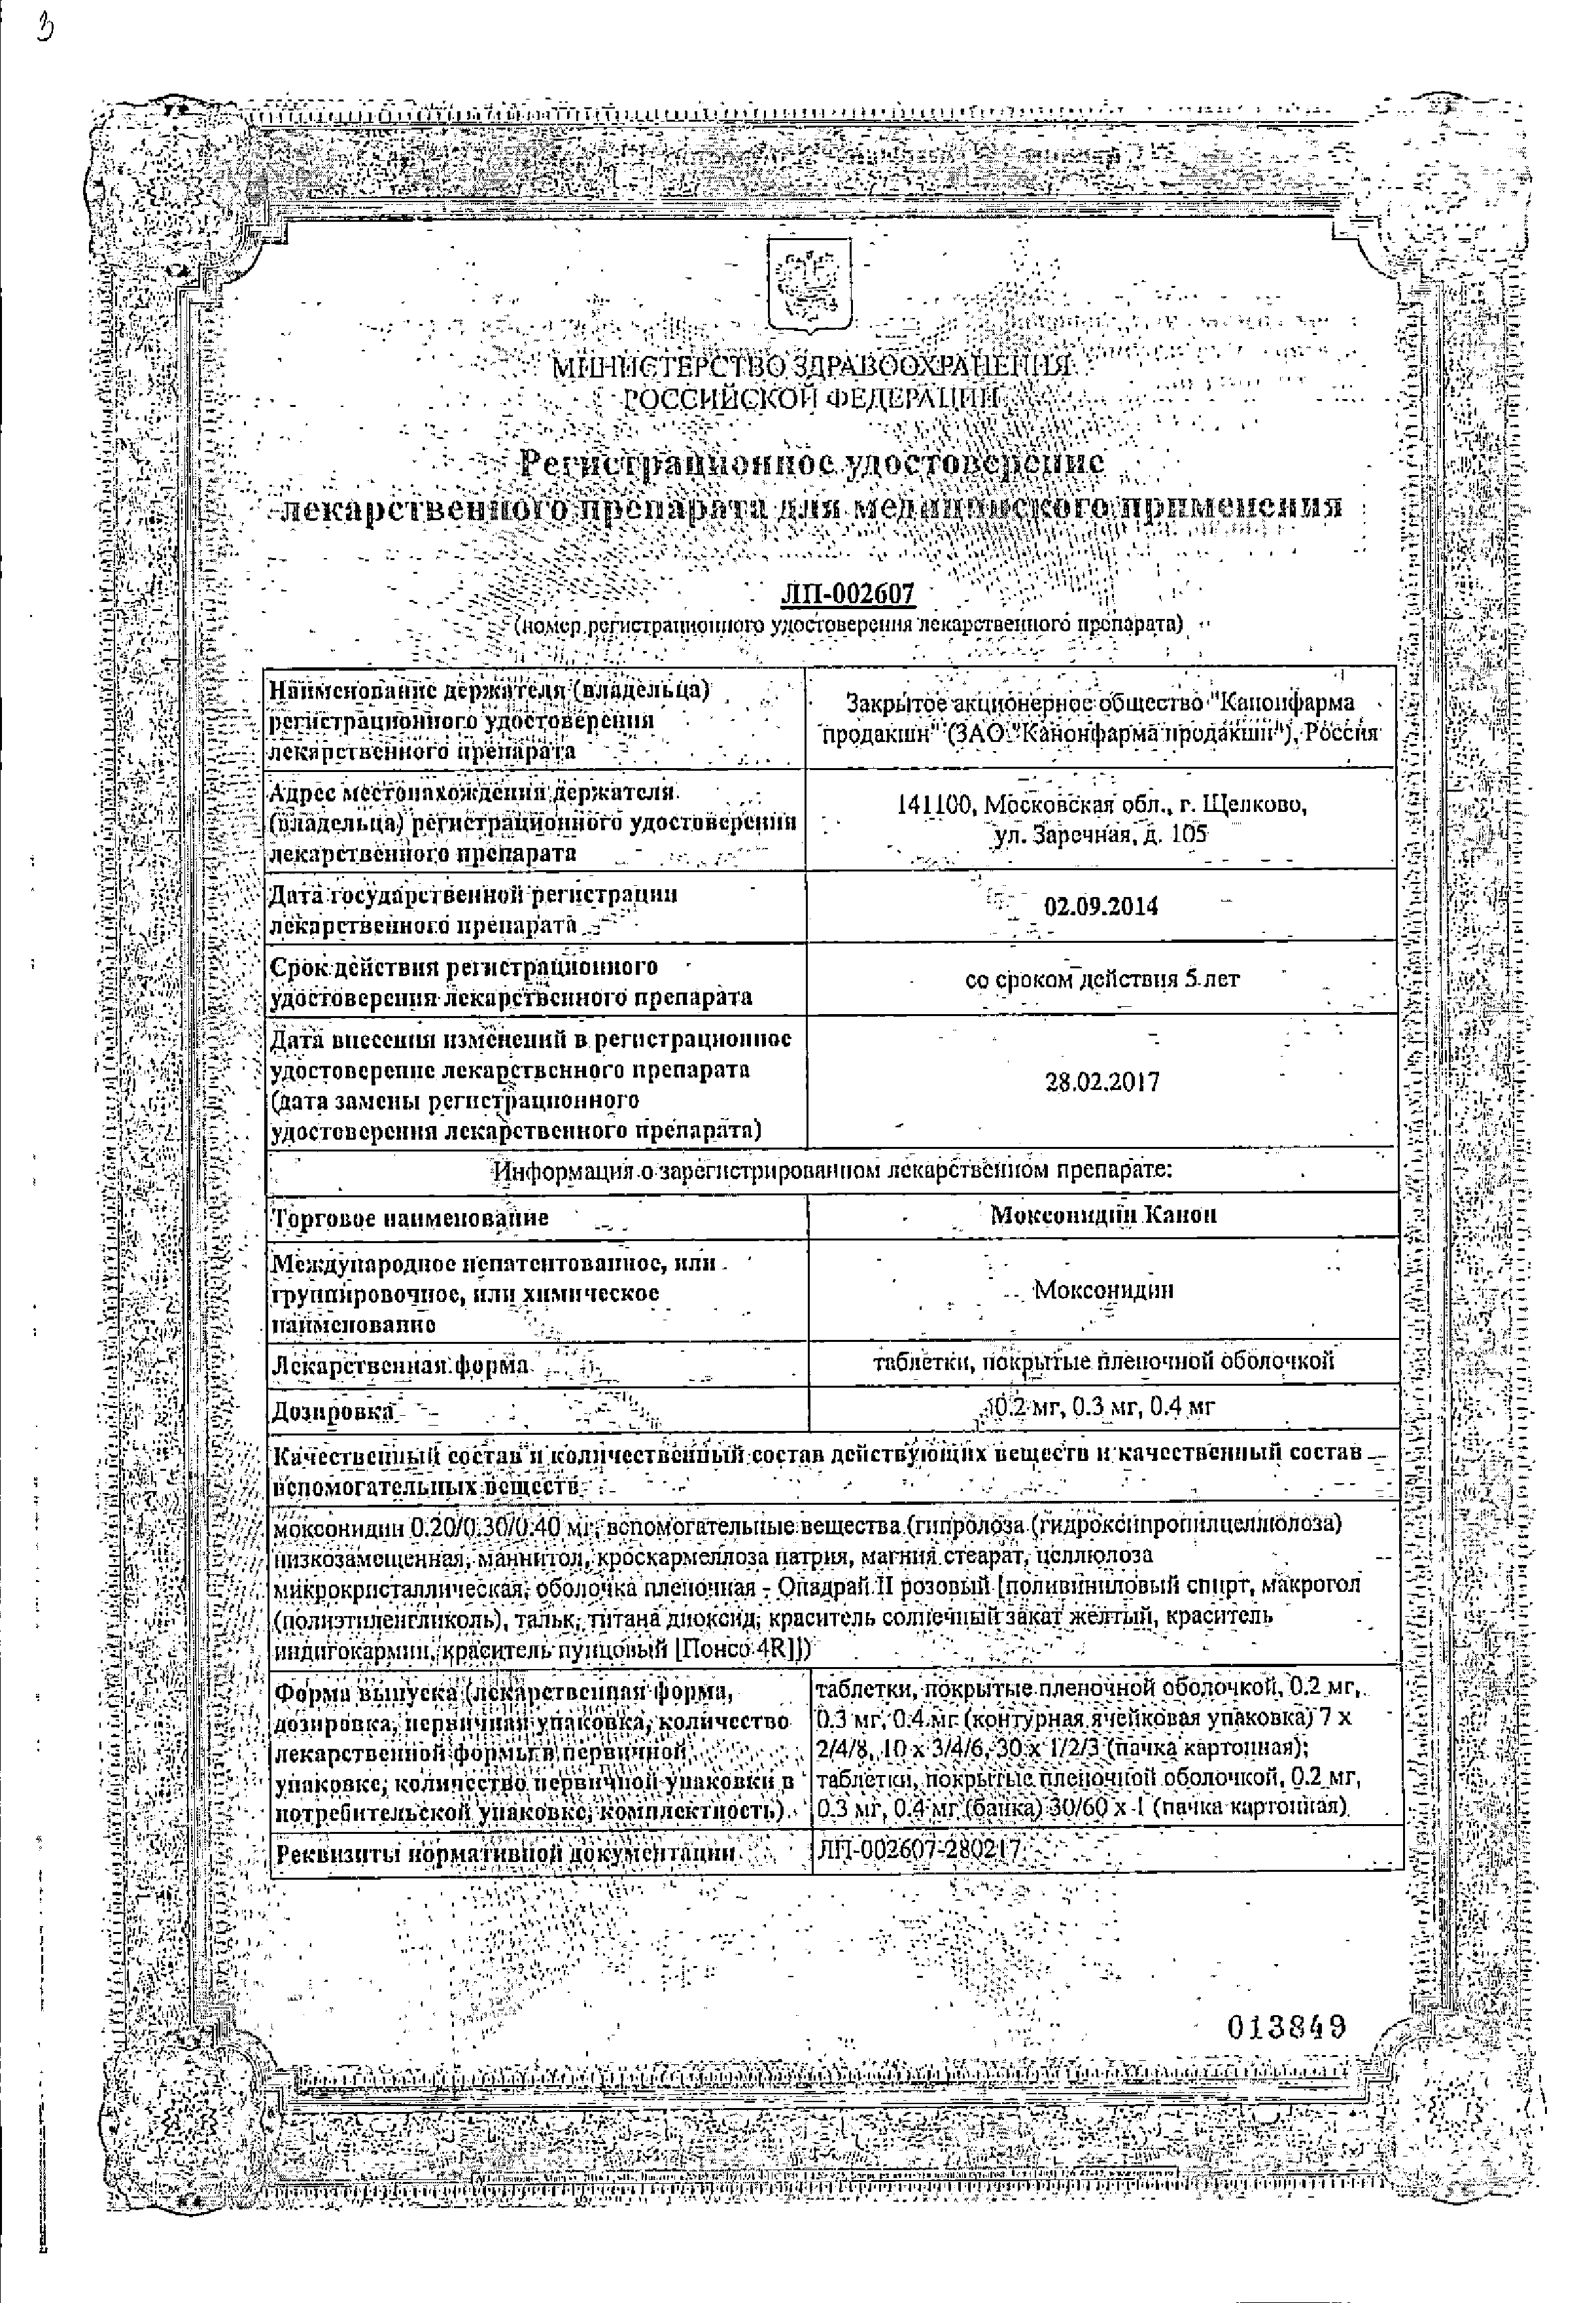 Моксонидин Канон сертификат